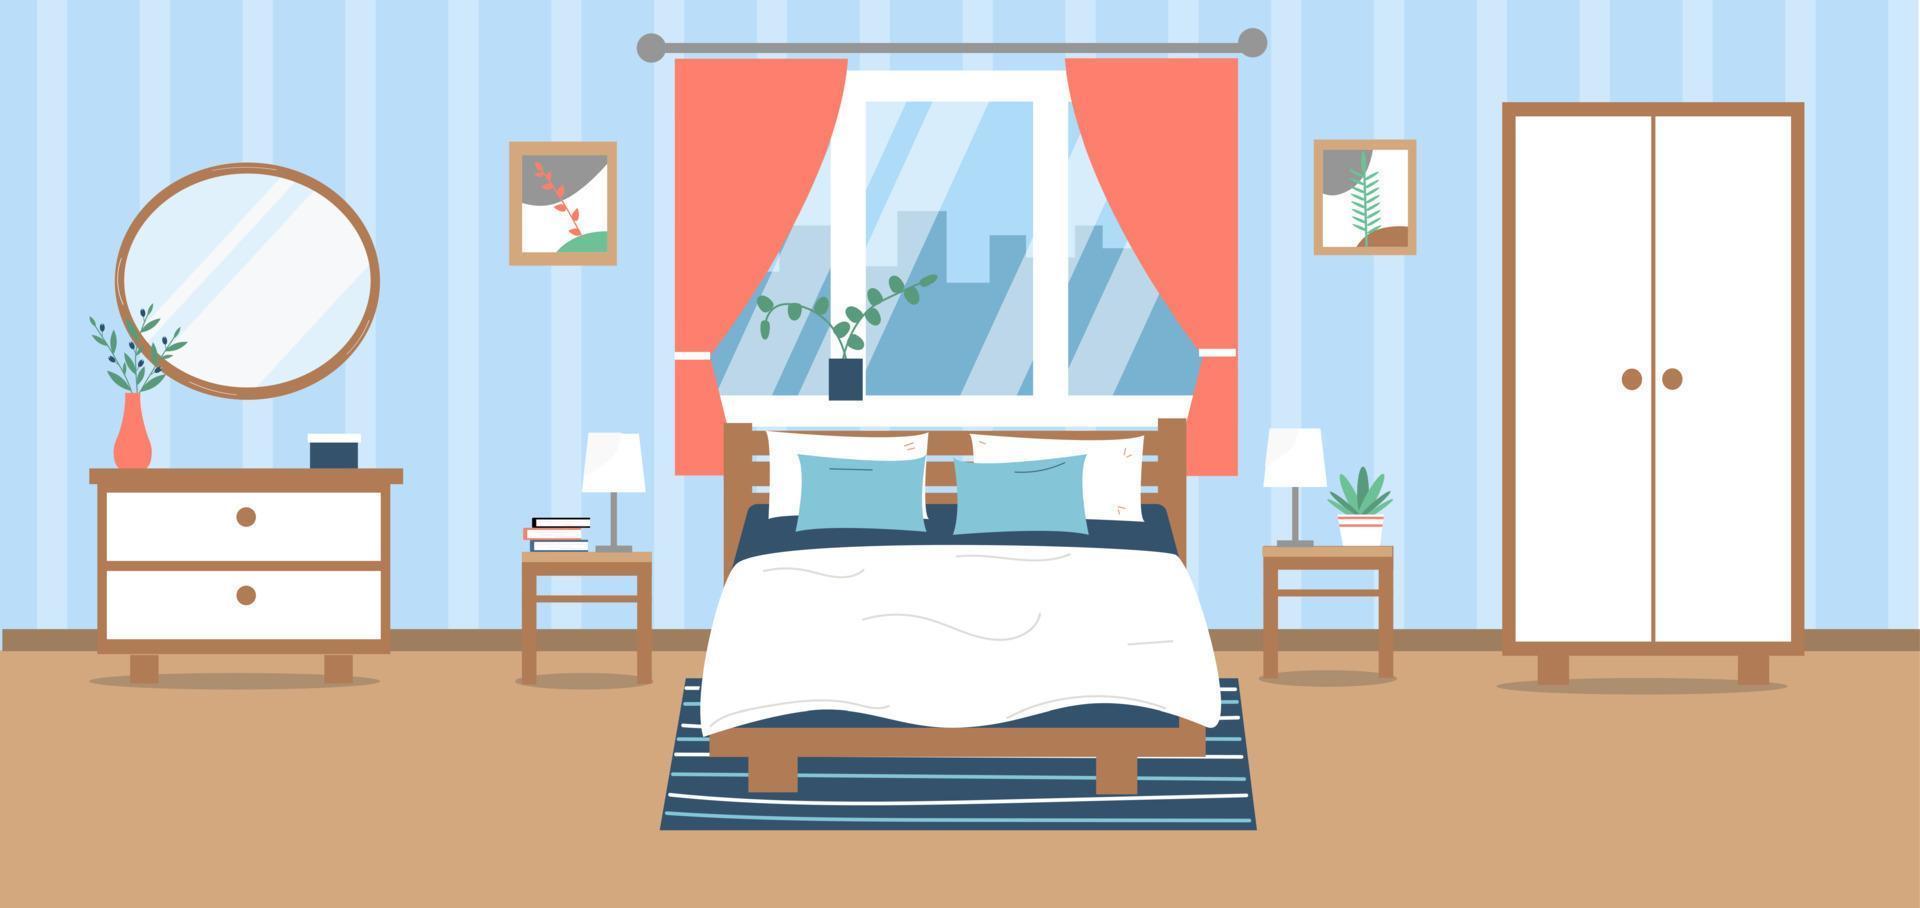 moderno Camera da letto interno. letto, armadio, armadio, impianti, immagini, decorazione. vettore illustrazione nel piatto stile.